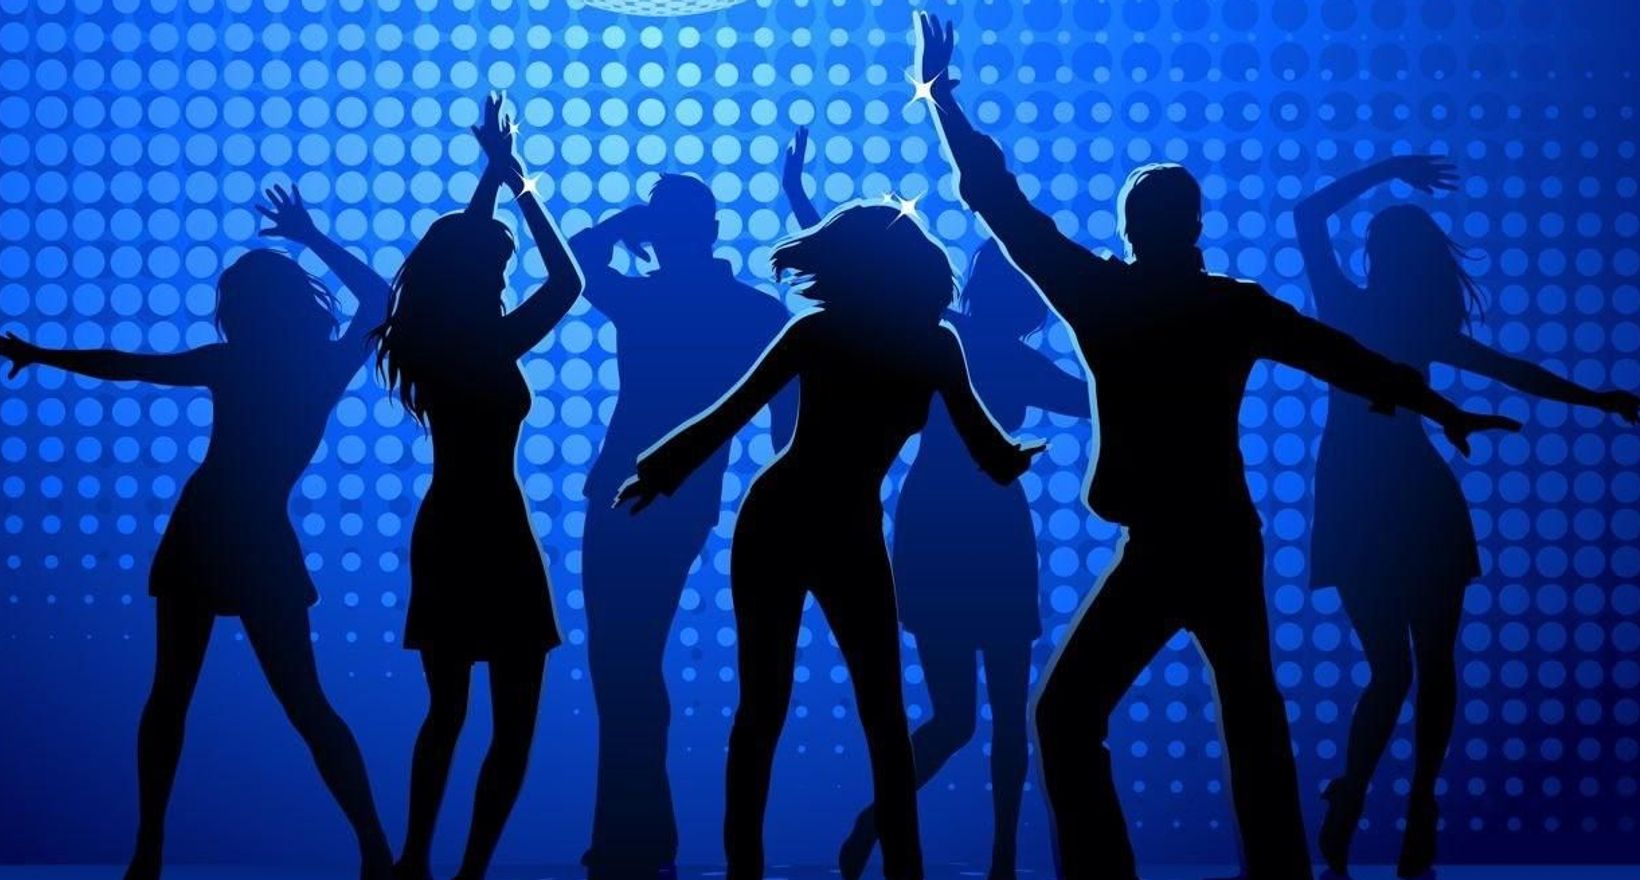 Disco disco party party remix. Дискотека. Люди танцуют. Тематическая дискотека. Диско танцы.